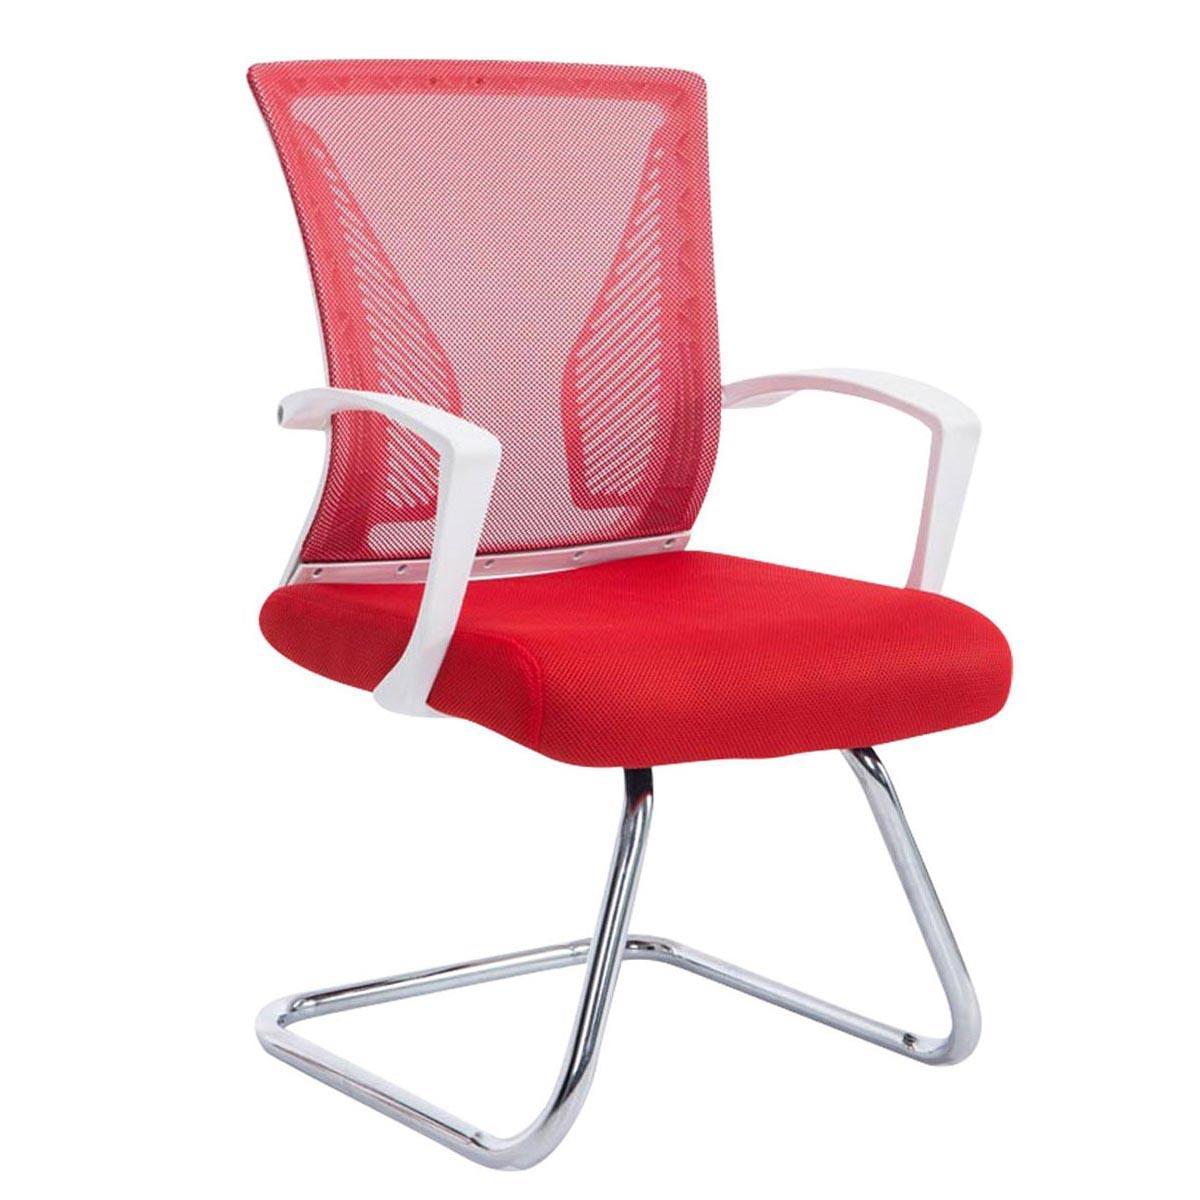 Chaise visiteur CUBA V, Structure Métallique, en Maille Respirable, Rouge